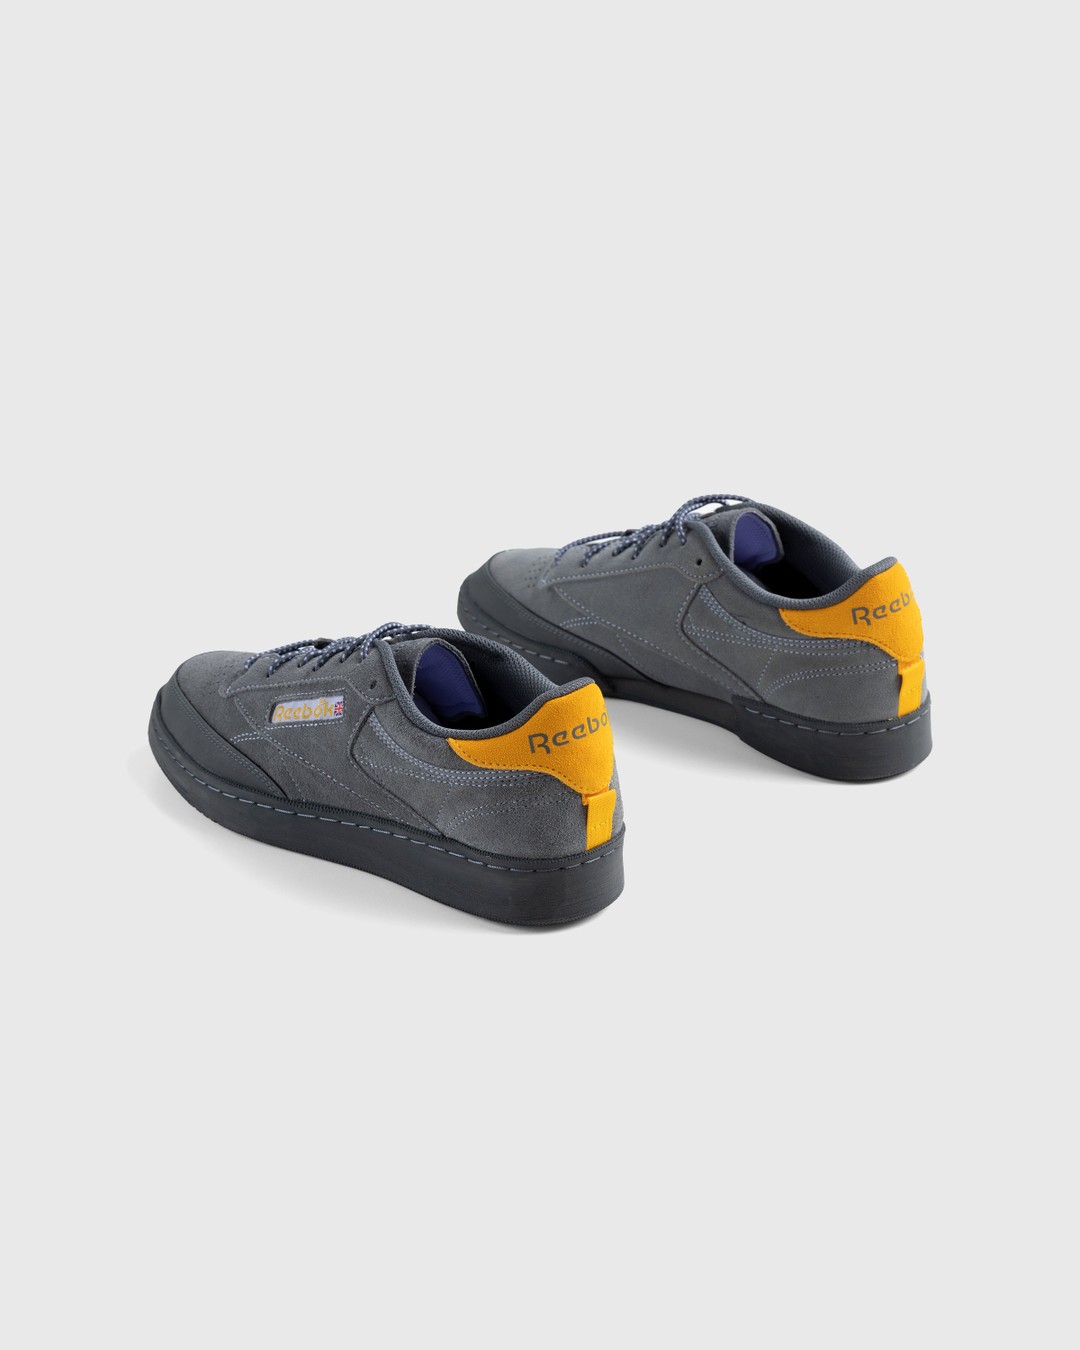 Reebok – Club C 85 Grey - Low Top Sneakers - Grey - Image 4